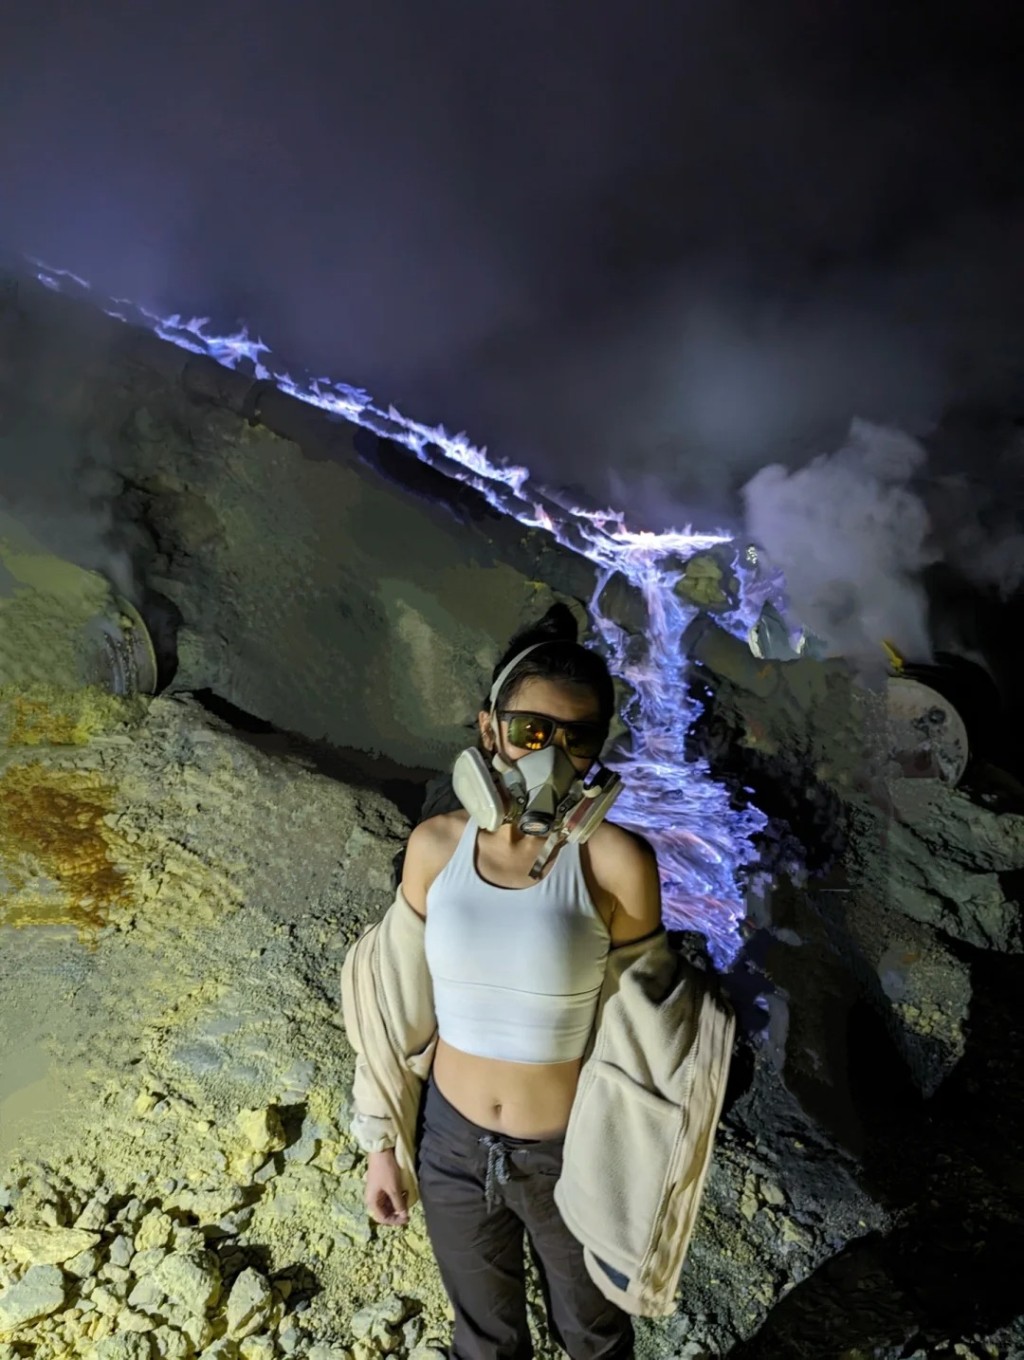 到印尼「伊真火山」观光，游j人要戴上面罩保护。小红书